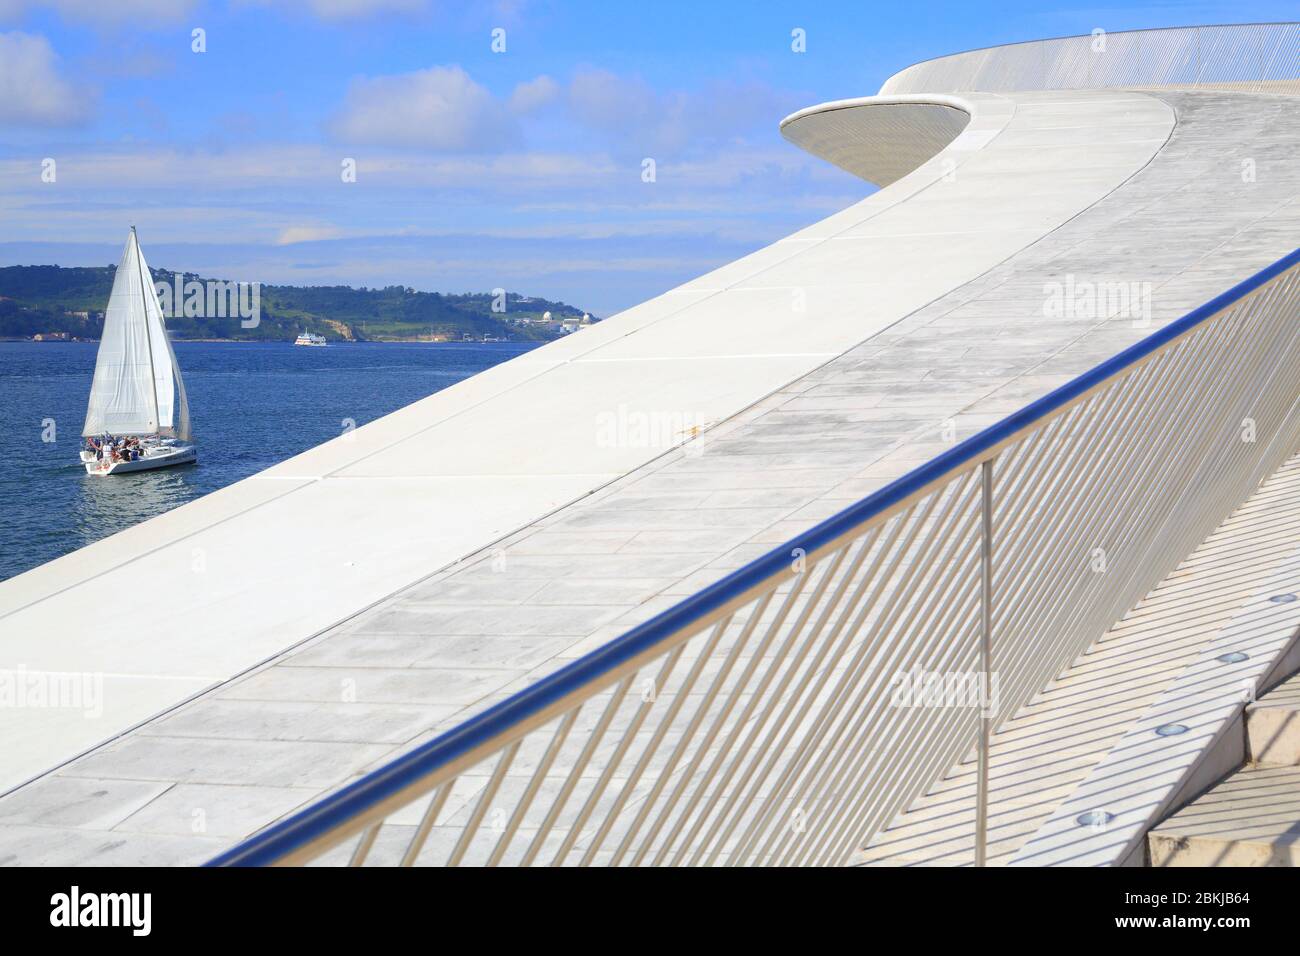 Portugal, Lisbonne, Belém, banques du Tage, MAAT (Musée d'Art, d'Architecture et de technologie ou Museu de Arte, Arquitetura e Tecnologia) inauguré en 2016 et conçu par l'architecte britannique Amanda Levete Banque D'Images